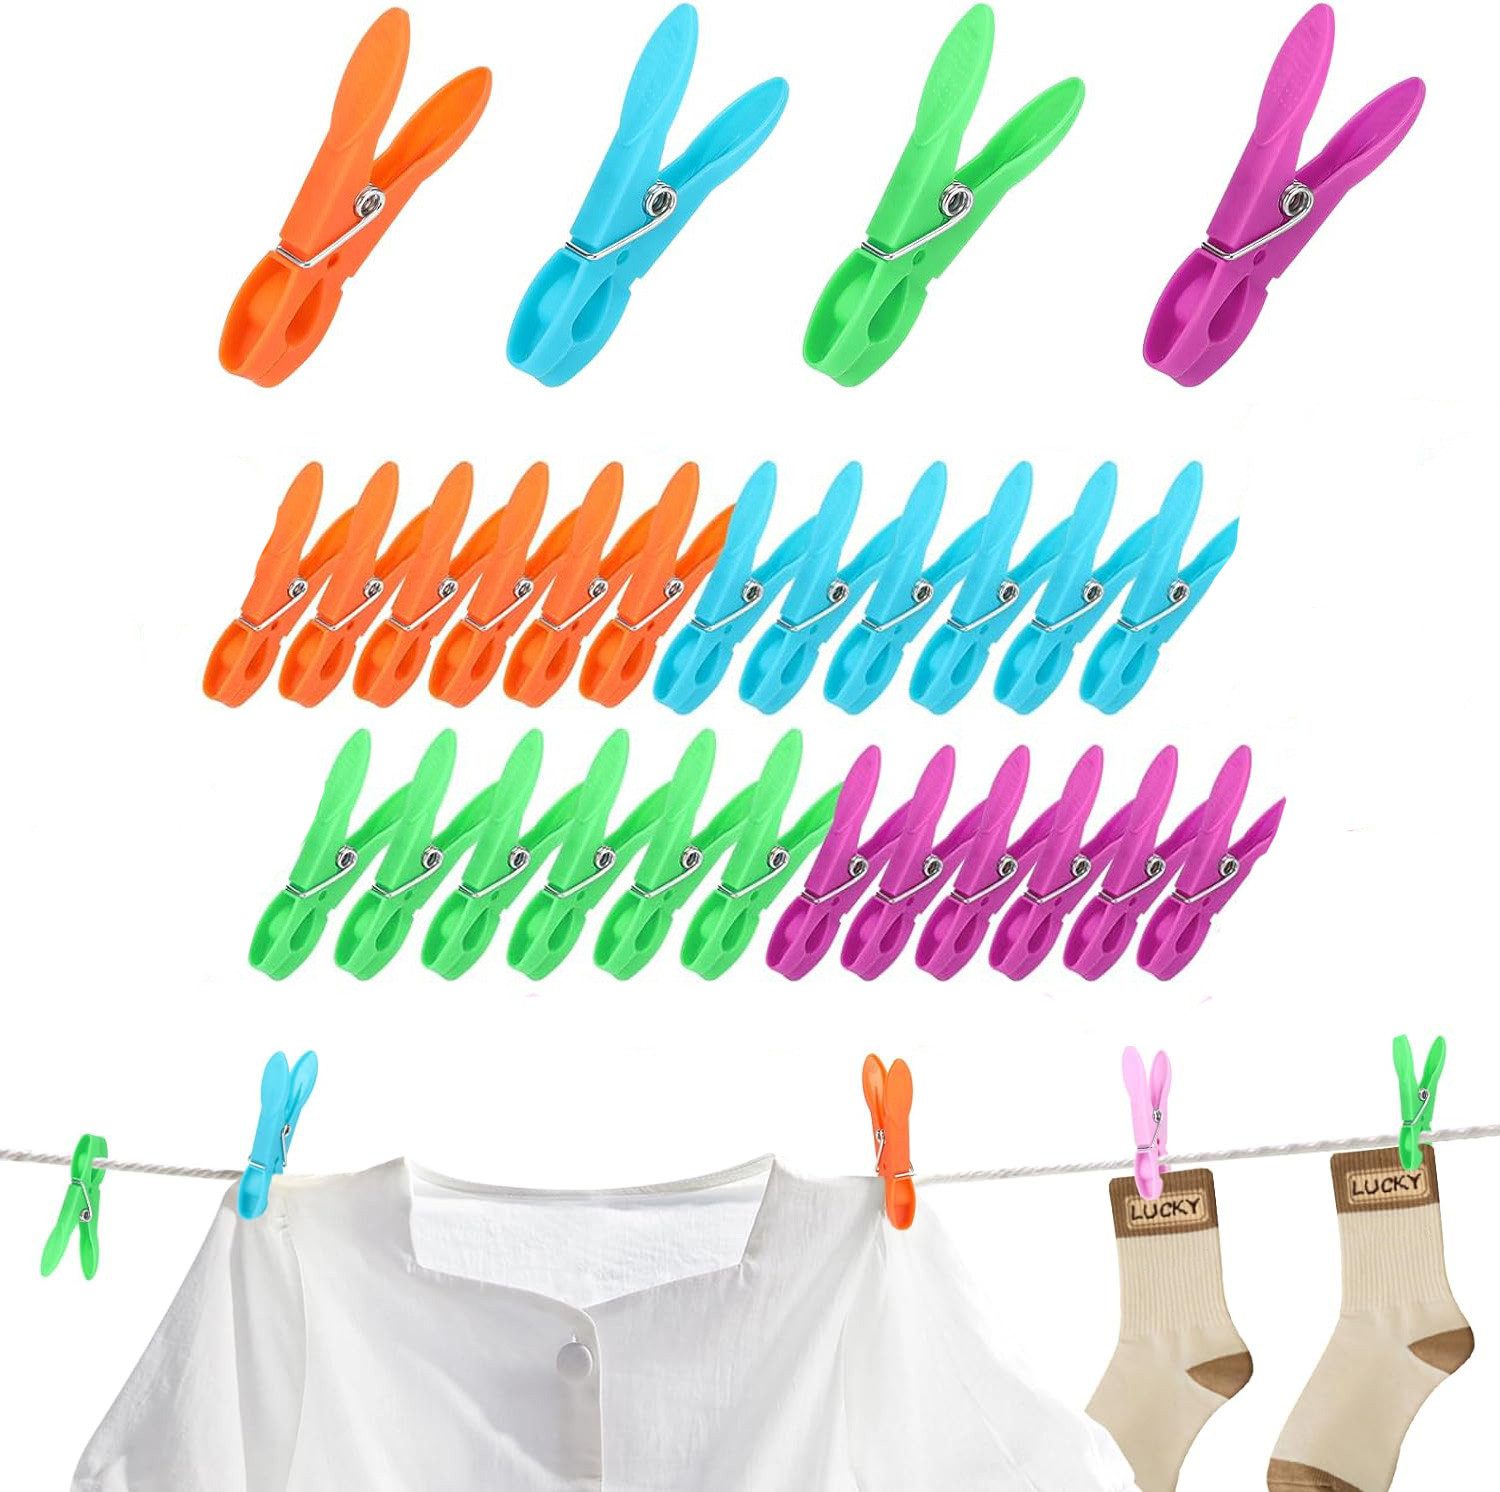 klarer Himmel Wäscheklammern 24 Kleiderhaken, unbedruckte Kleiderhaken, 4 Farben Winddicht, Kunststoffhaken mit starkem Griff für Wäscheleinen, Handtücher